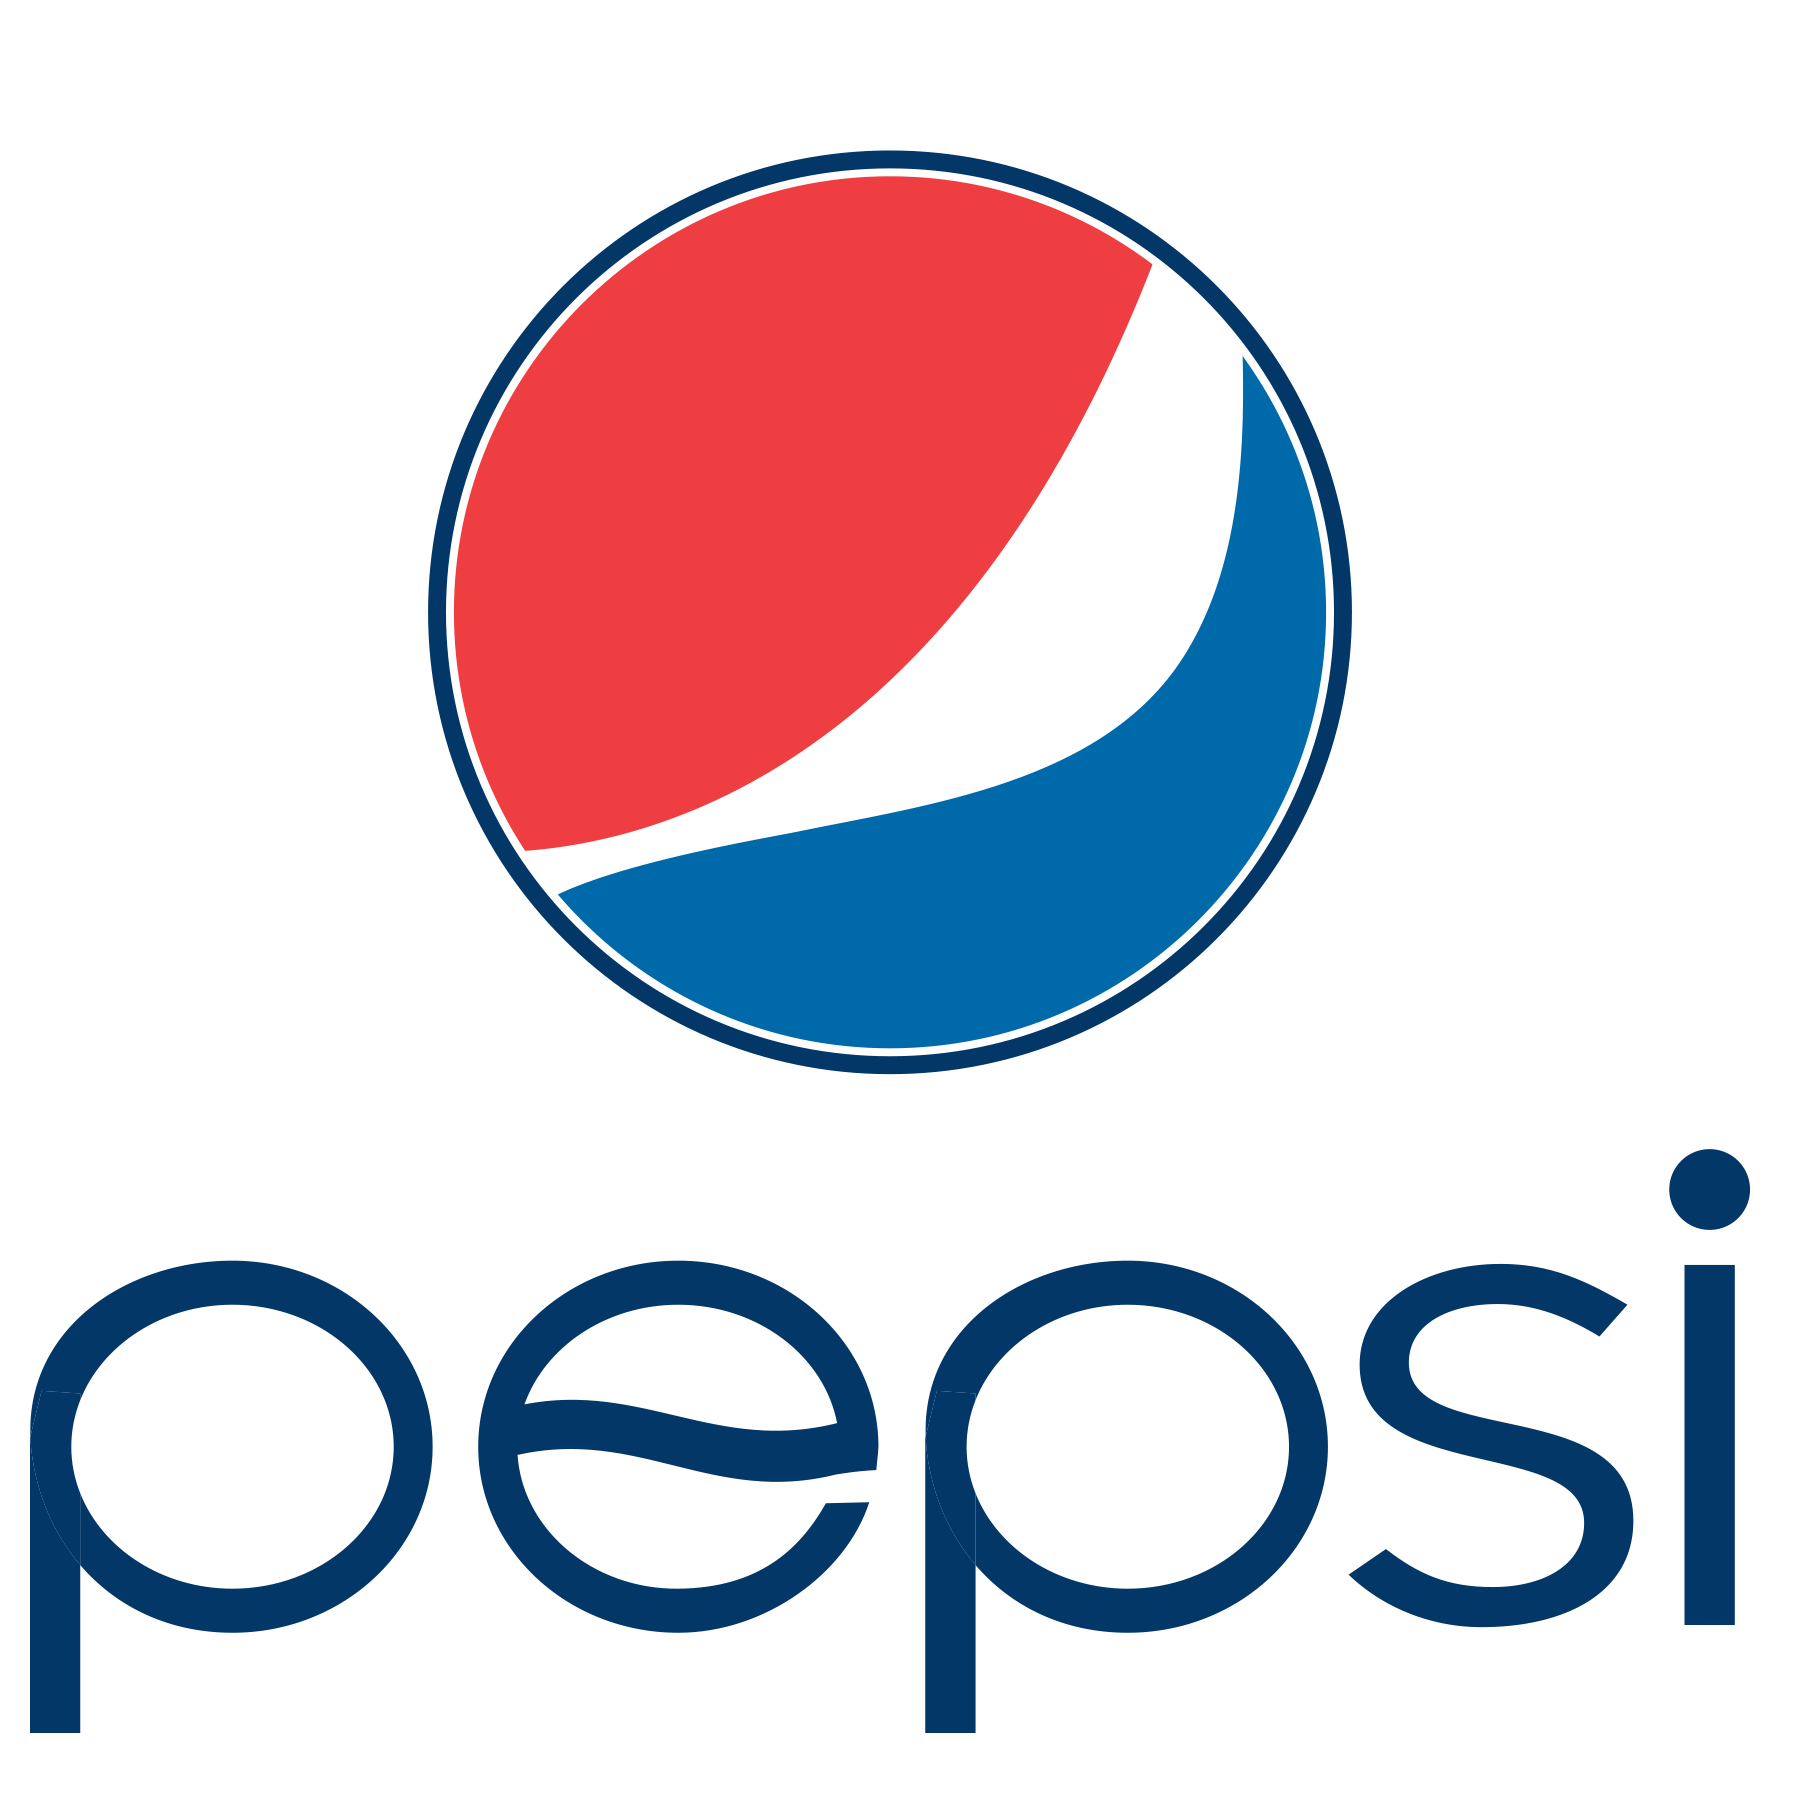 kisspng-pepsi-globe-coca-cola-logo-portable-network-graphi-5c5369cdd7d8b6.2995682815489704458841 Pegasus